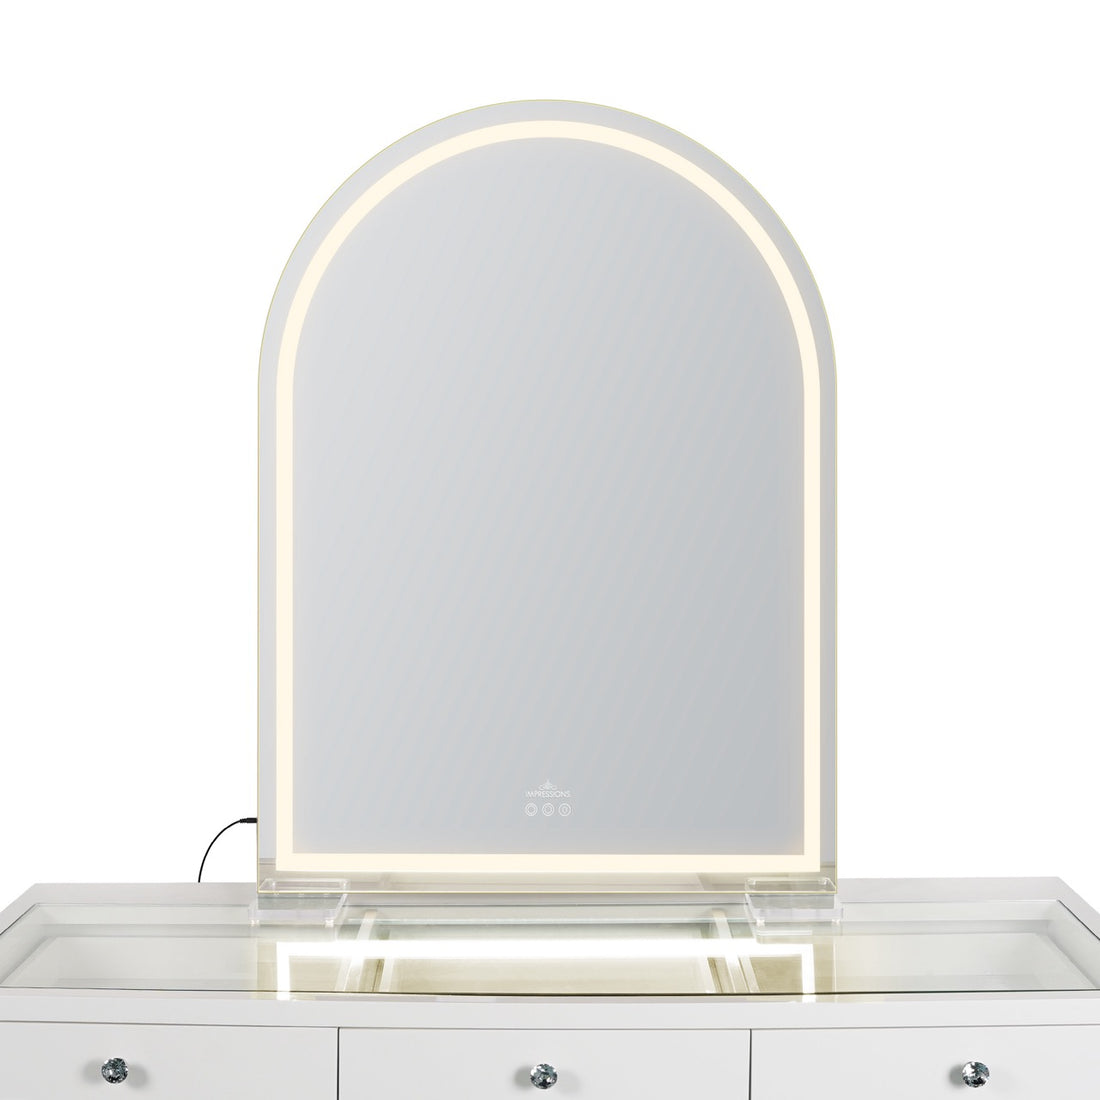 Stage Lite Arch XL Vanity Mirror-Strip Warm- Front View